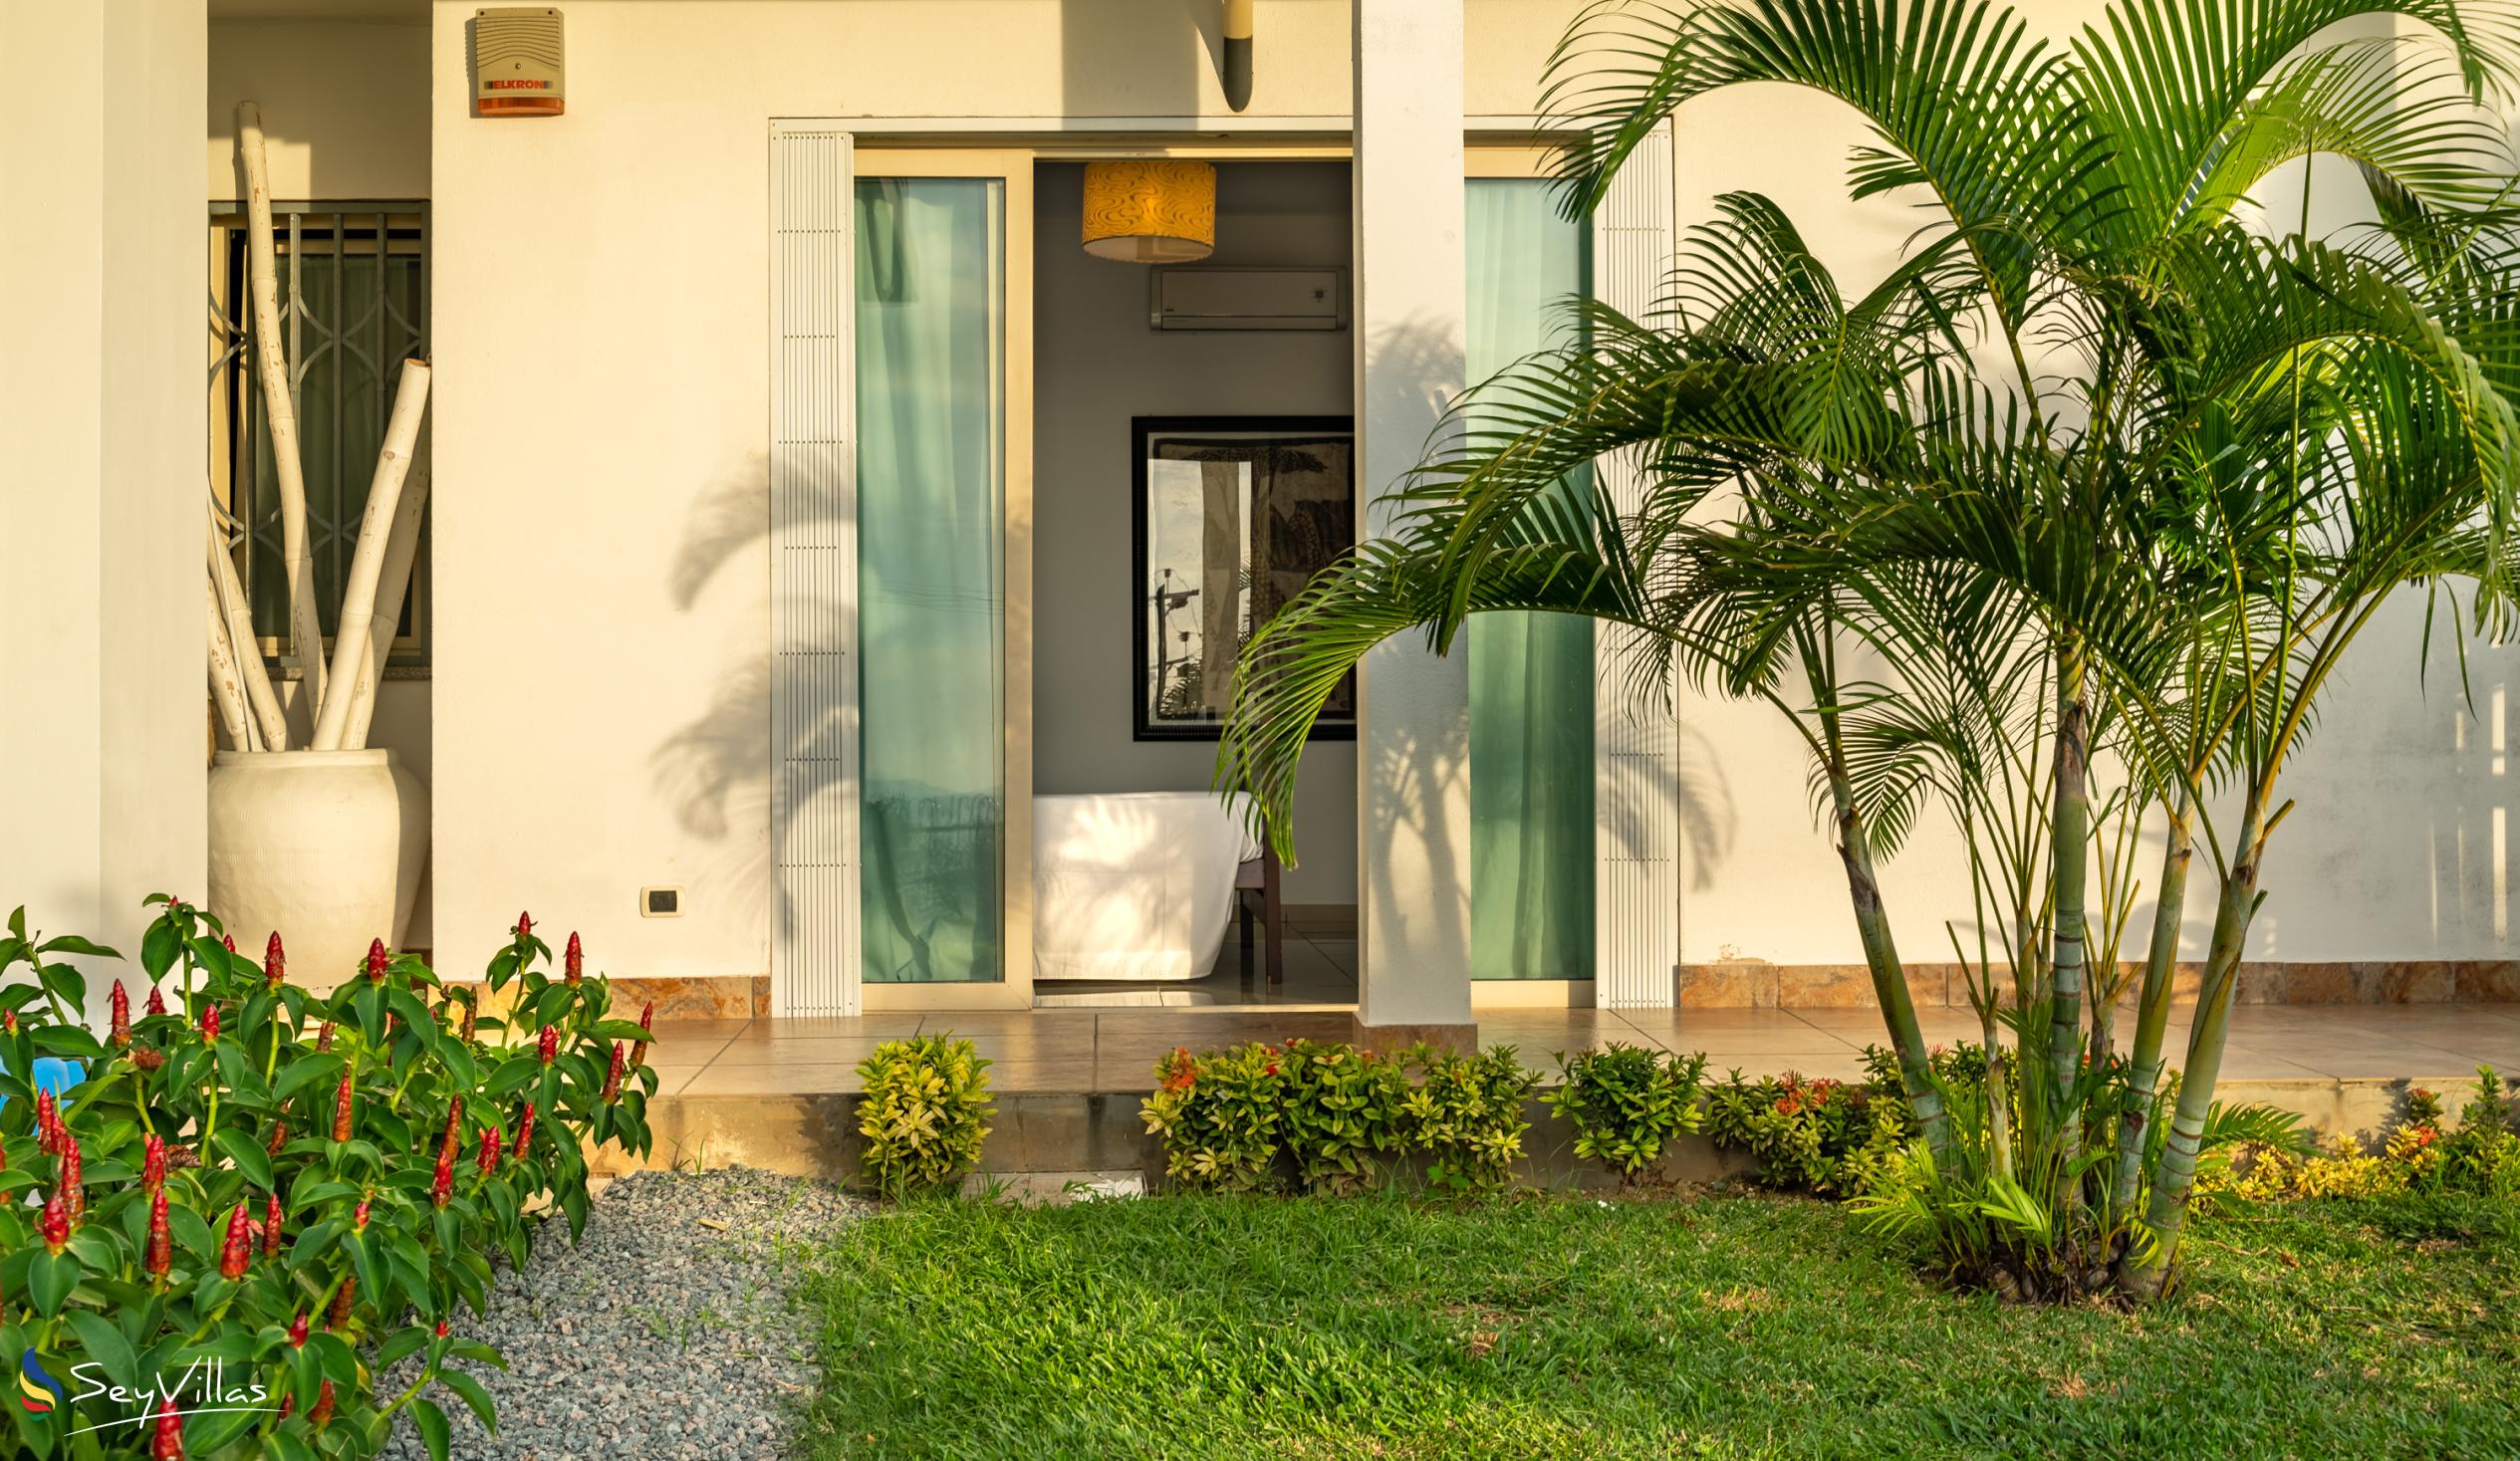 Foto 90: Villa Roscia - Chambre petit prix - Mahé (Seychelles)